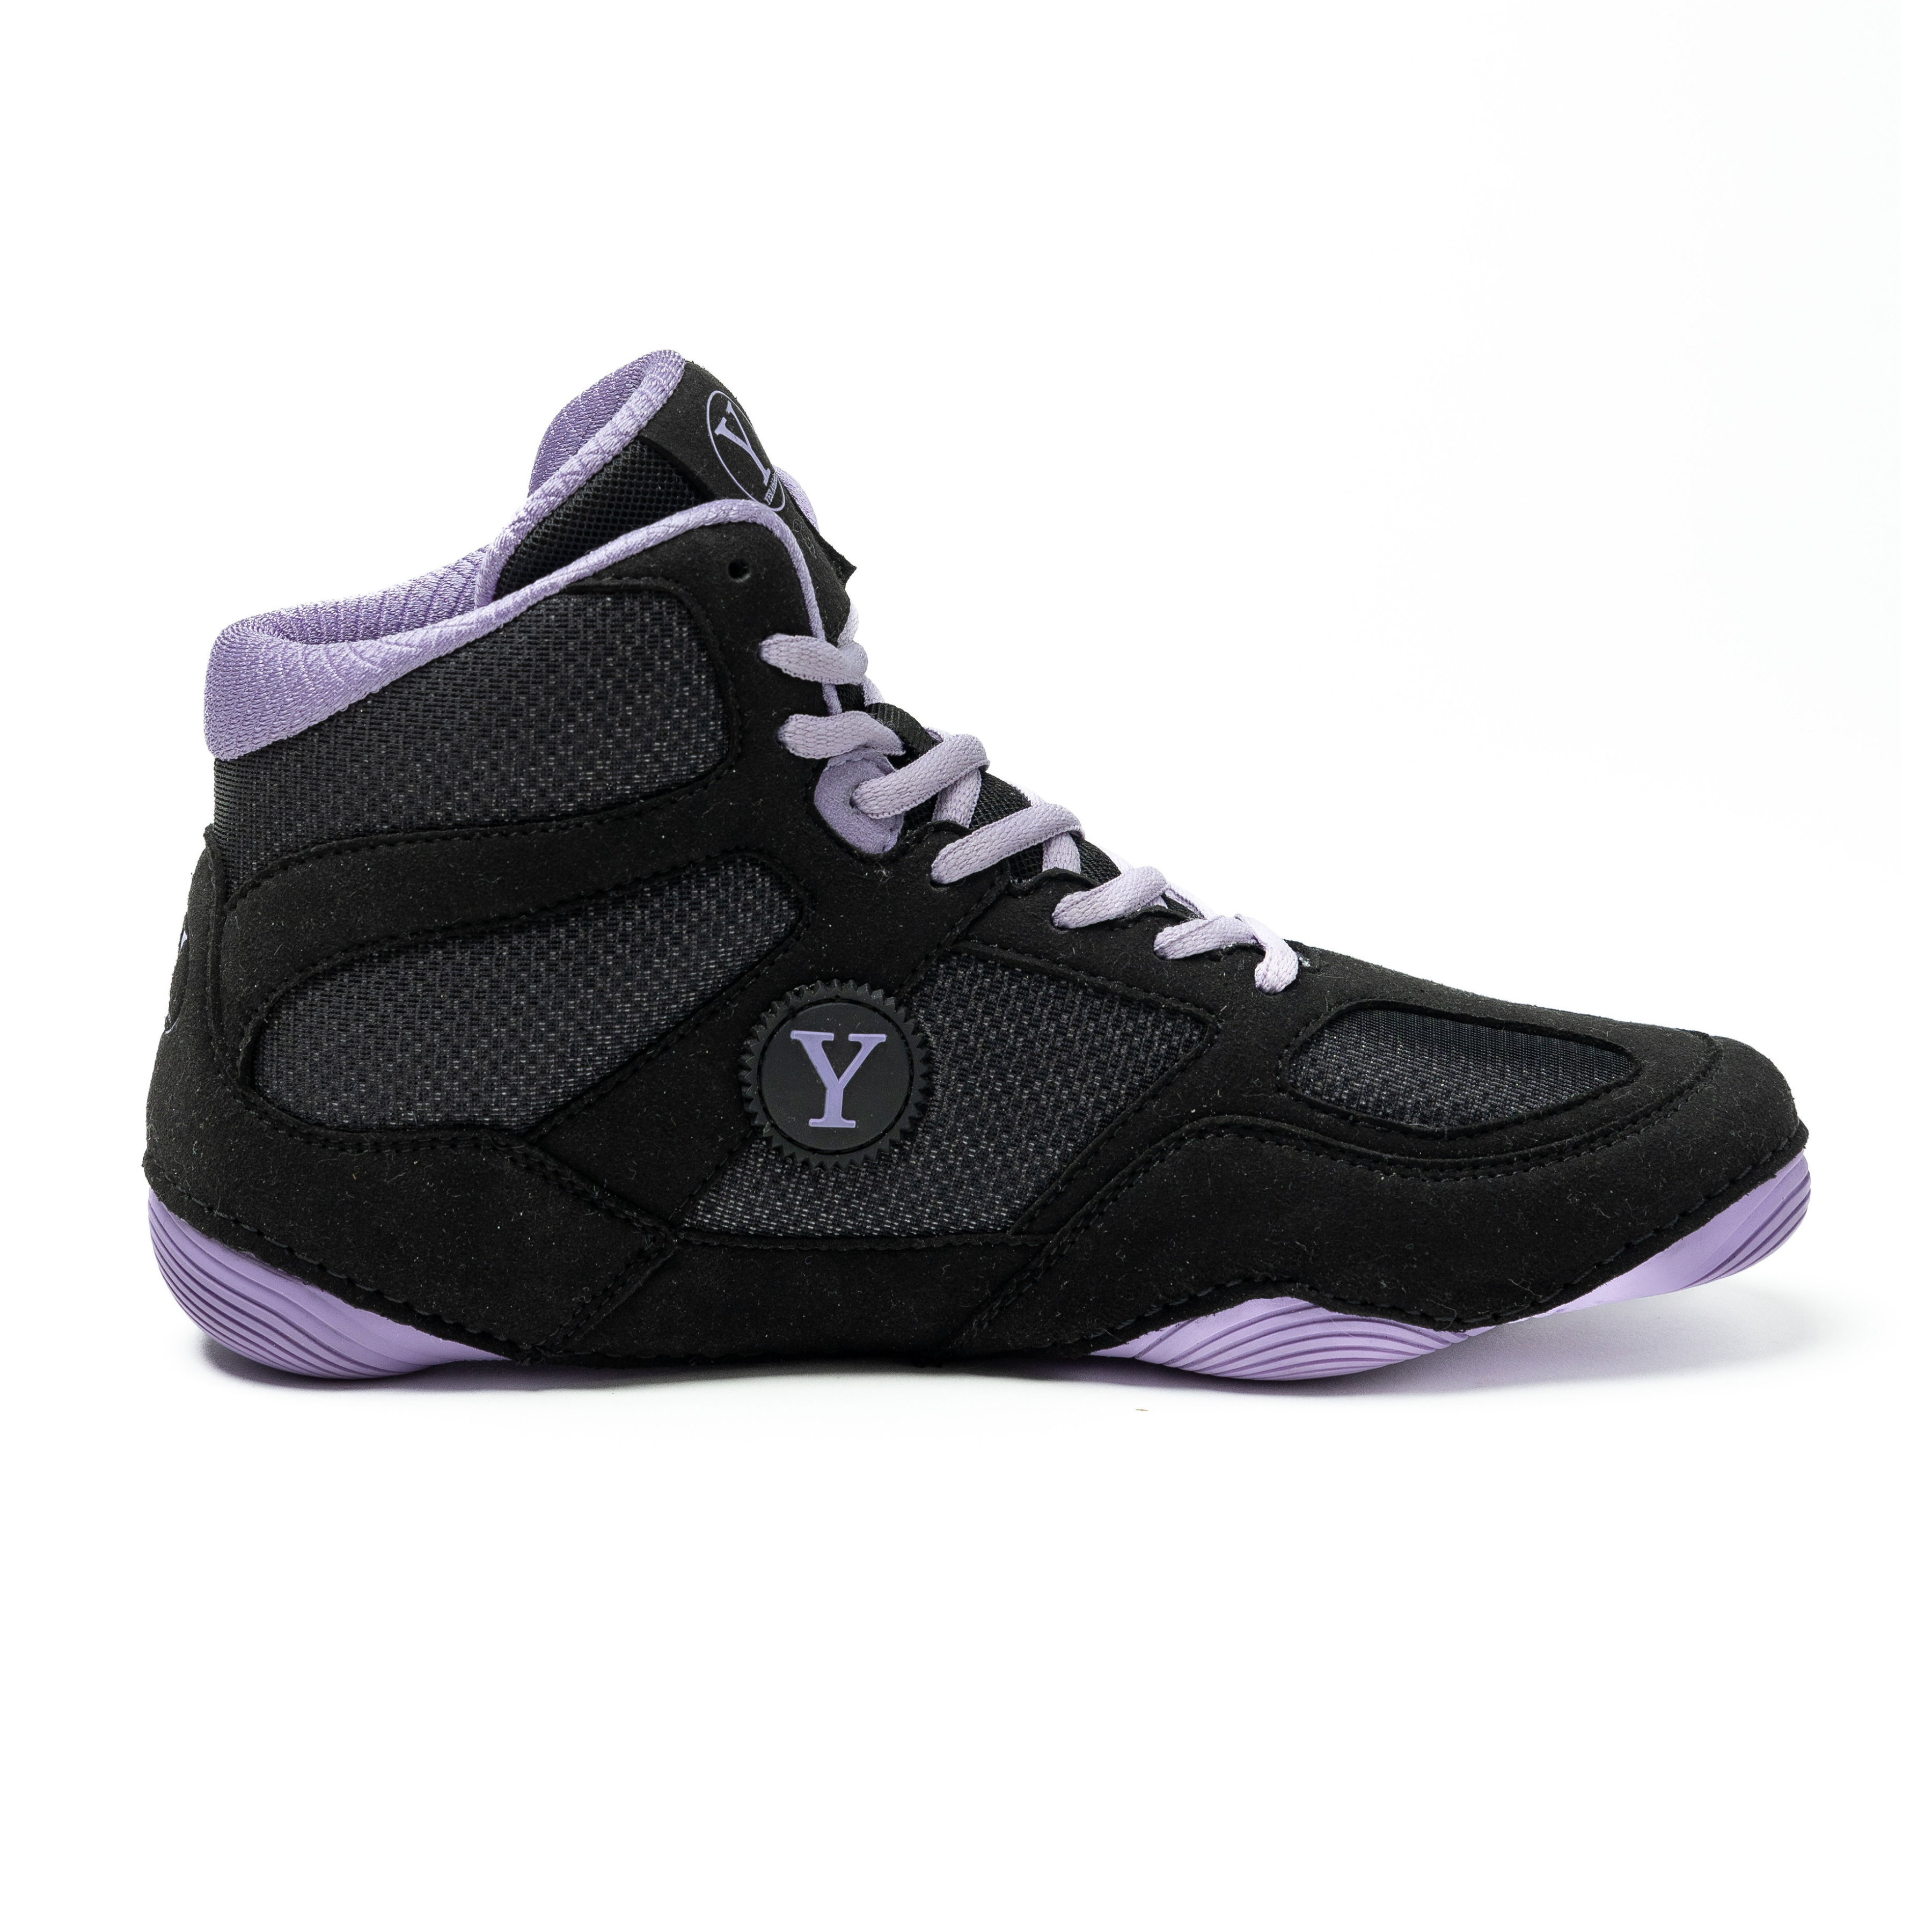 Purple and black Yes! Athletics girls wrestling shoe